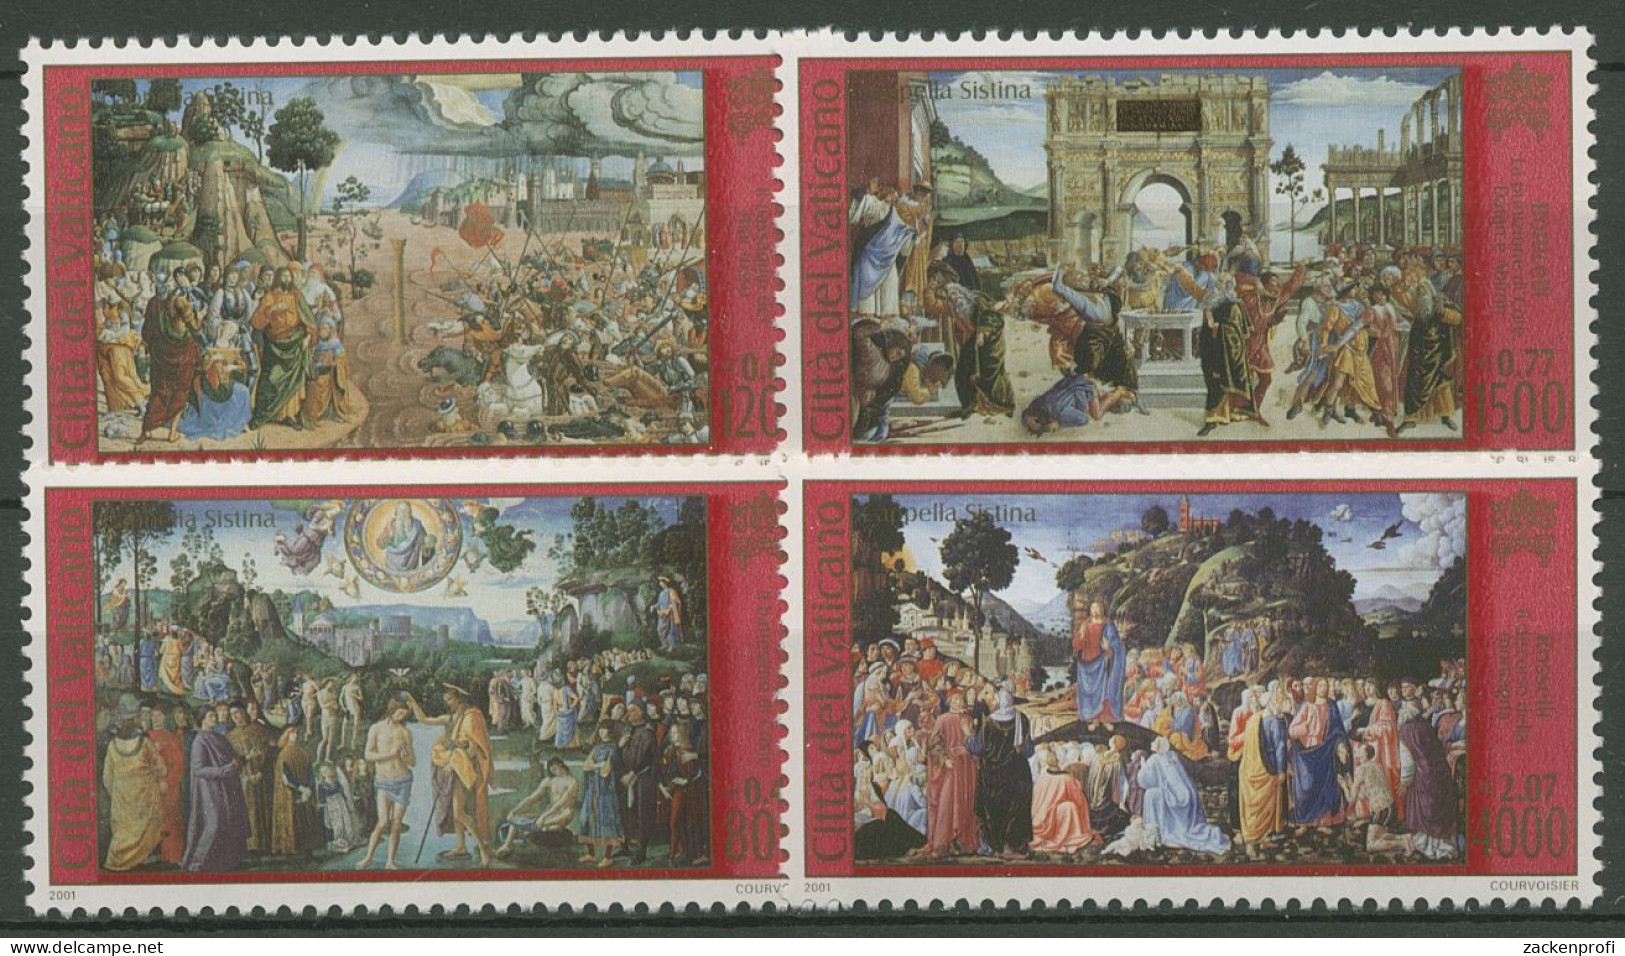 Vatikan 2001 Restaurierung Der Sixtinischen Kapelle 1362/65 Postfrisch - Neufs